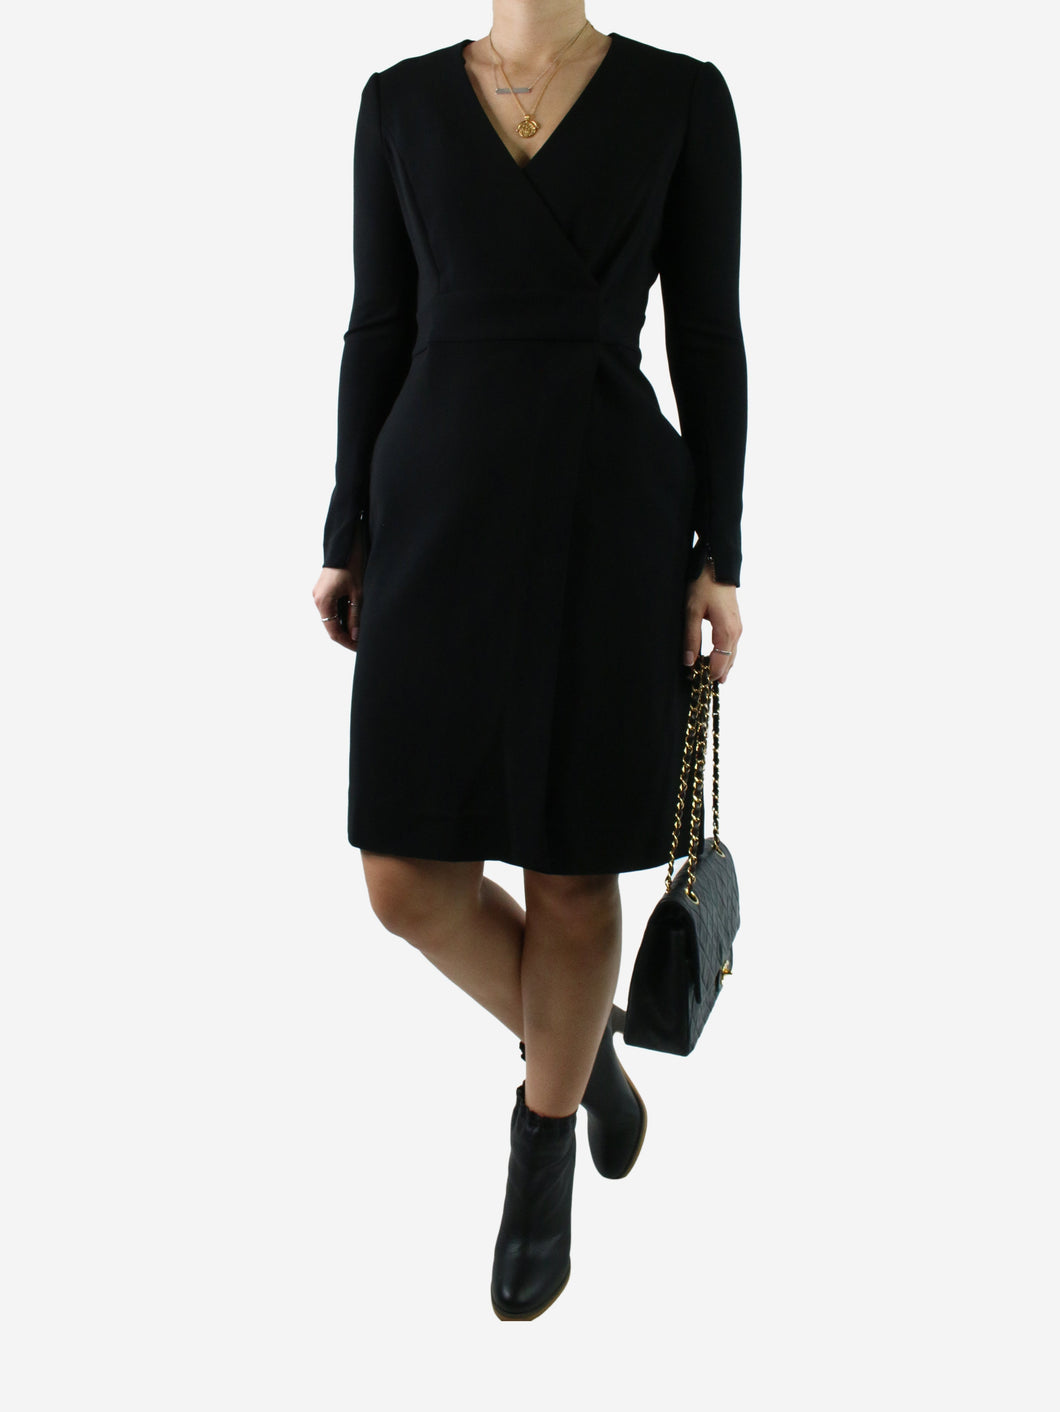 Black long-sleeved dress - size US 2 Dresses Diane Von Furstenberg 